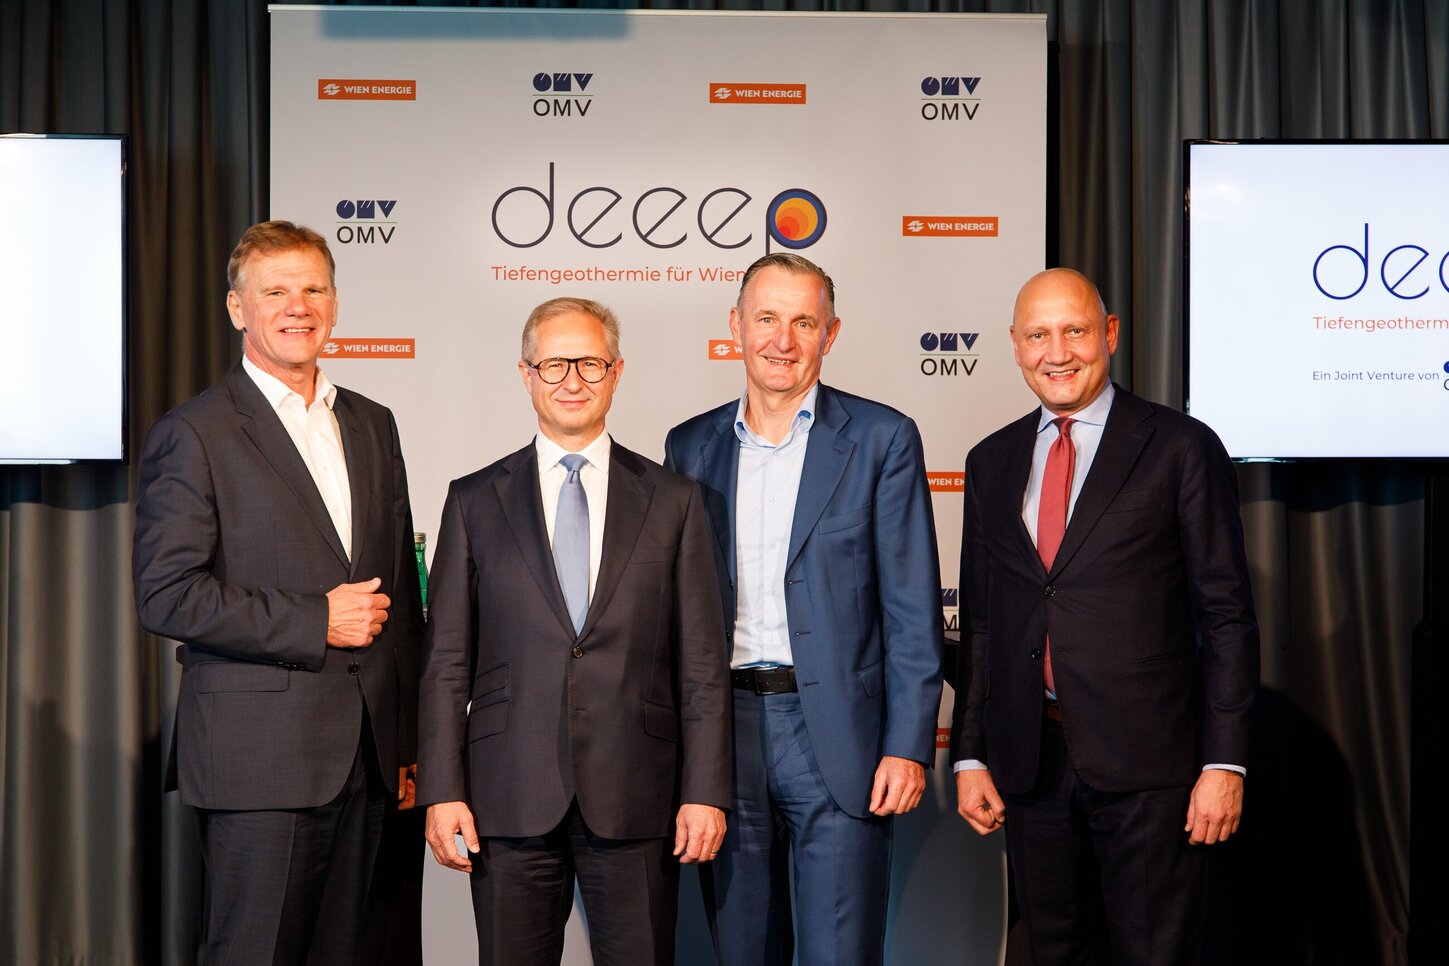 Австрийските енергийни компании OMV и Wien Energie основаха съвместното предприятие